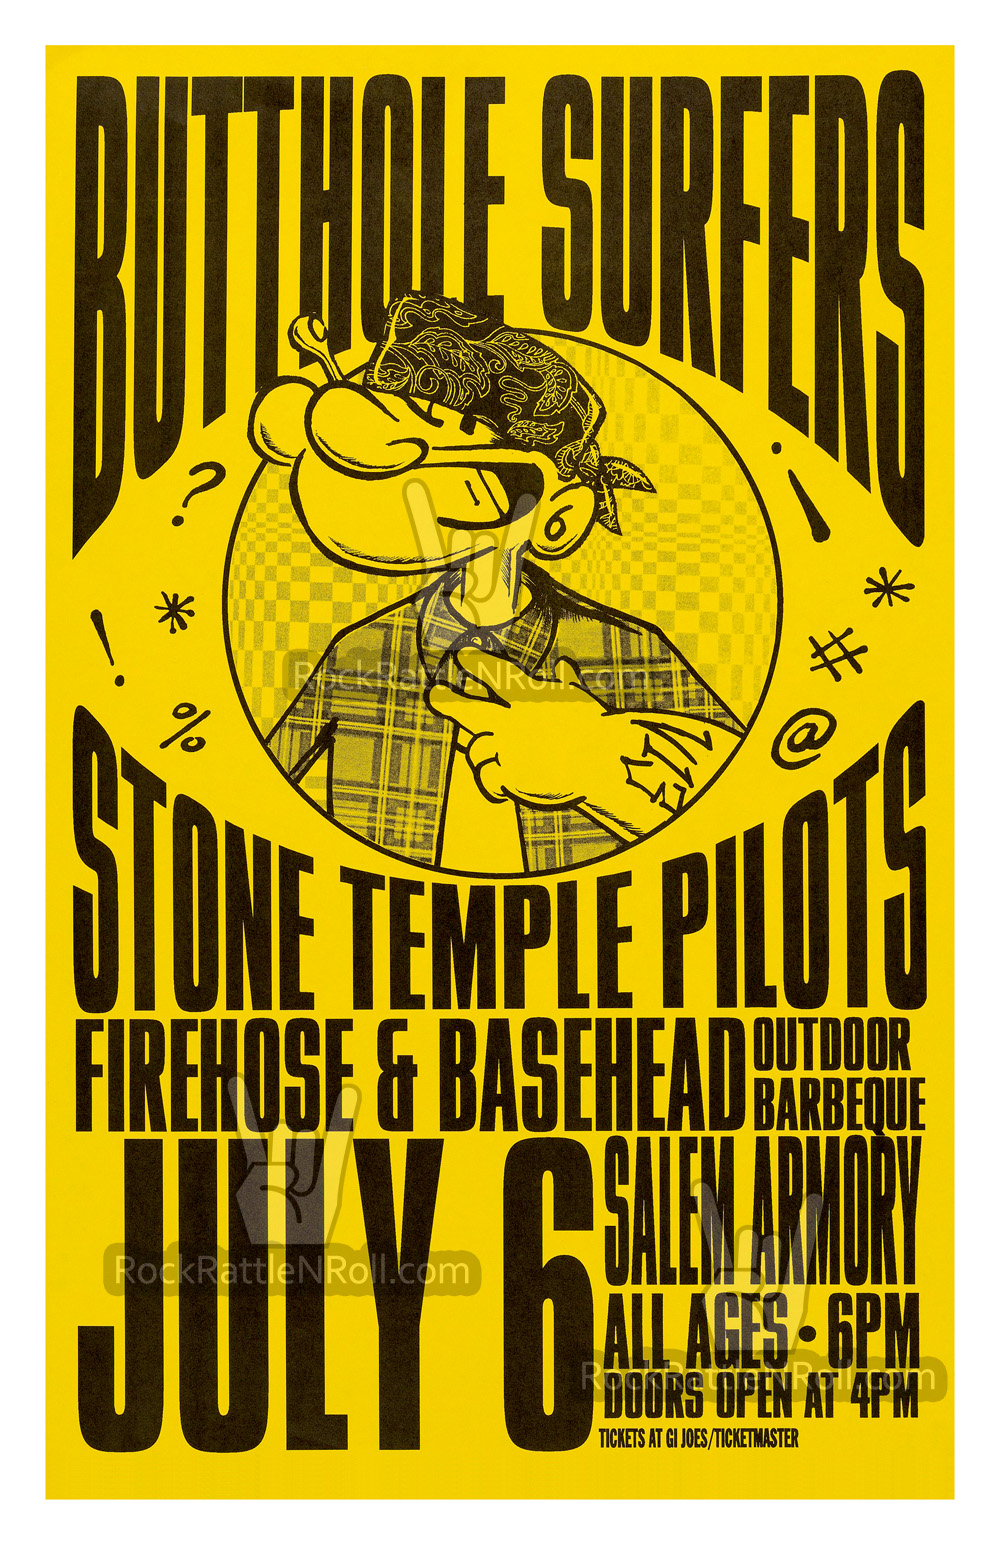 Butthole Surfers / Stone Temple Pilots - 1993 Salem Armory Concert Poster